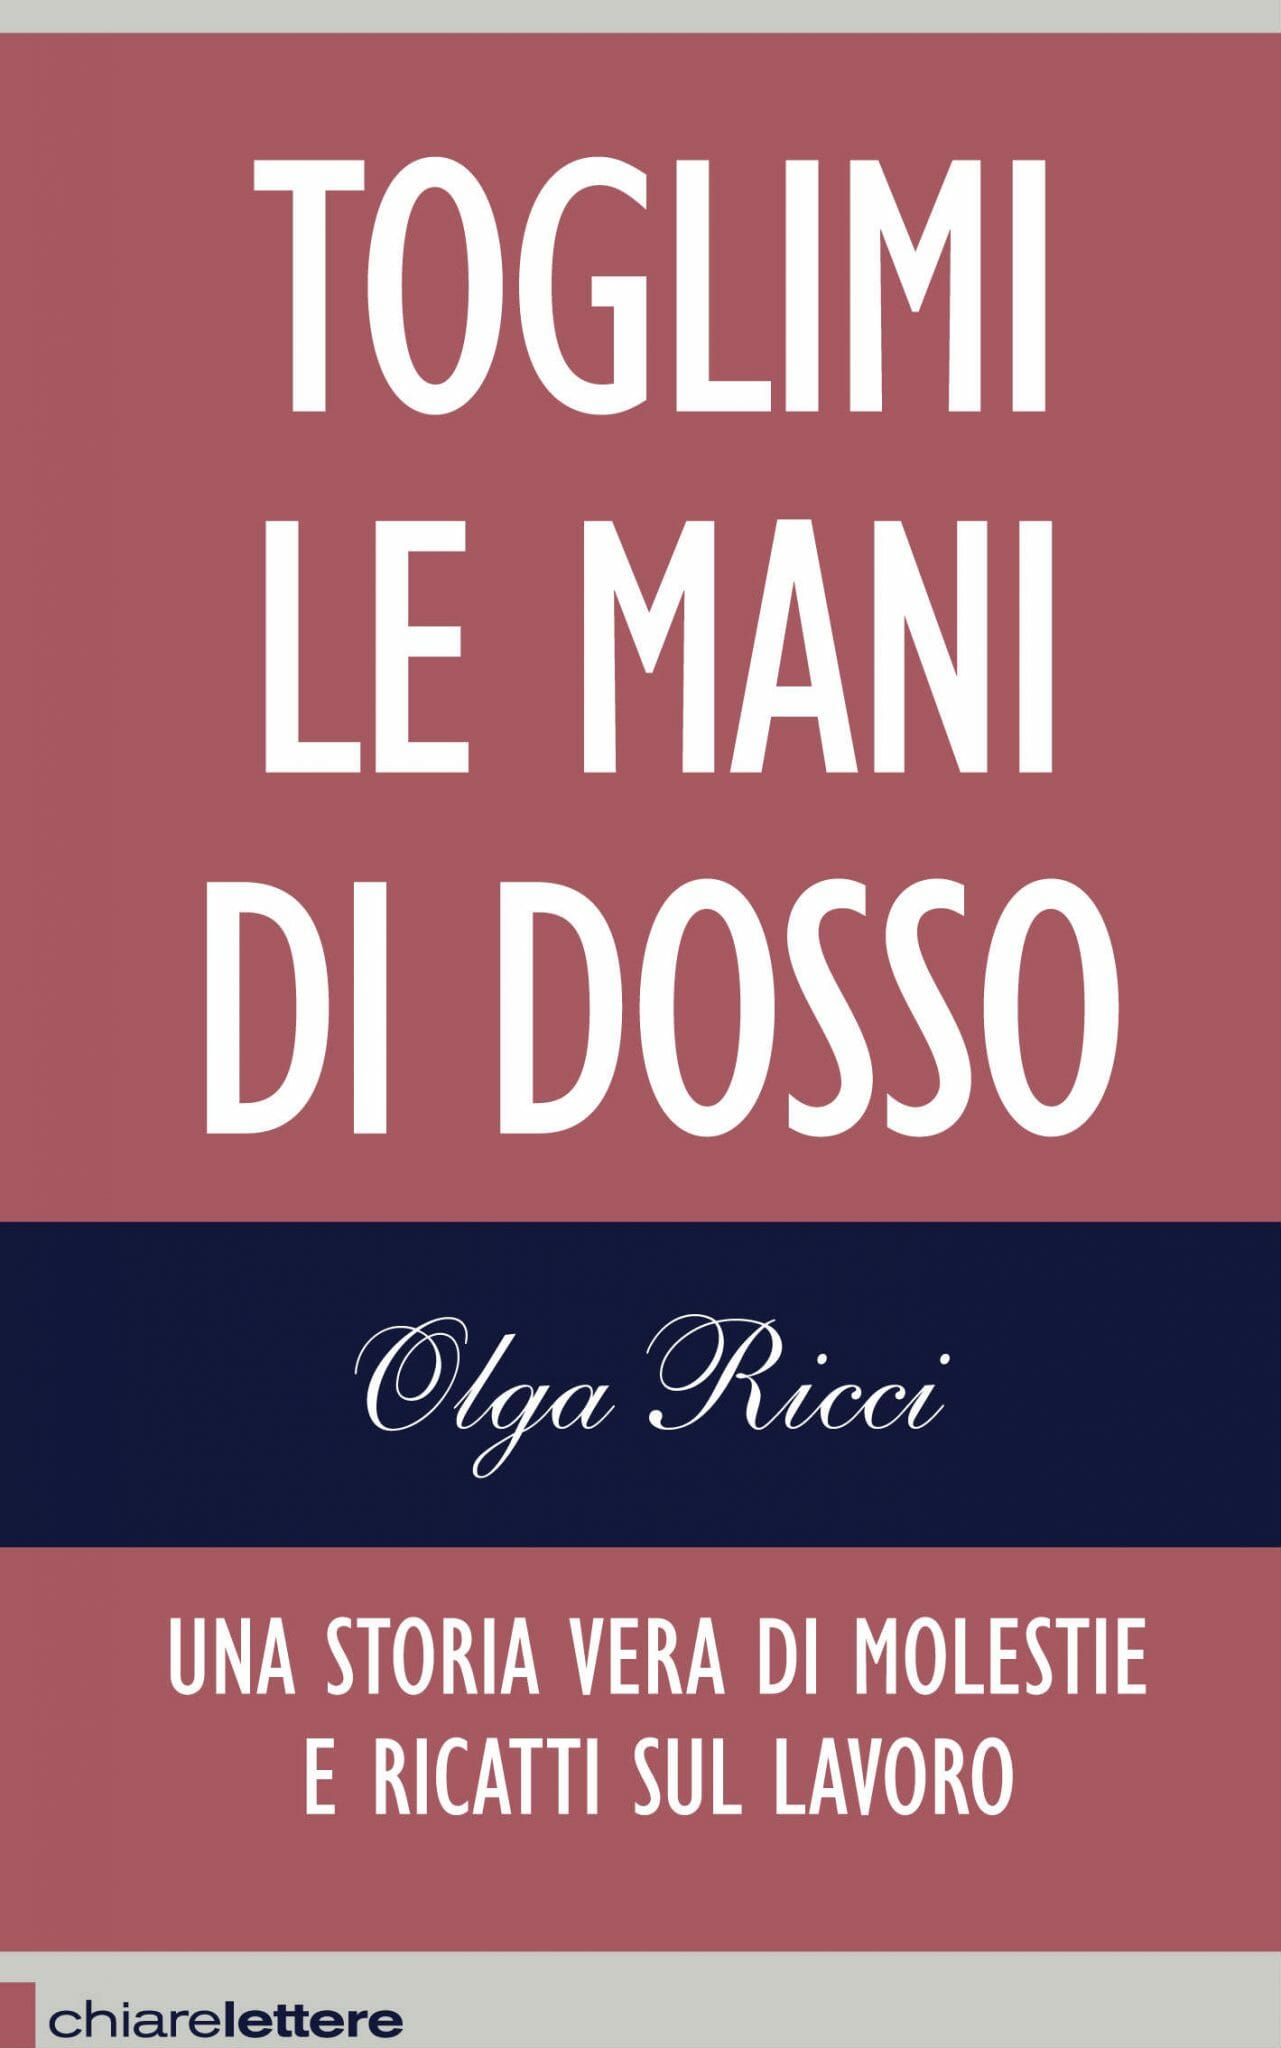 Toglimi le mani di dosso (Paperback, Italiano language, Chiarelettere)